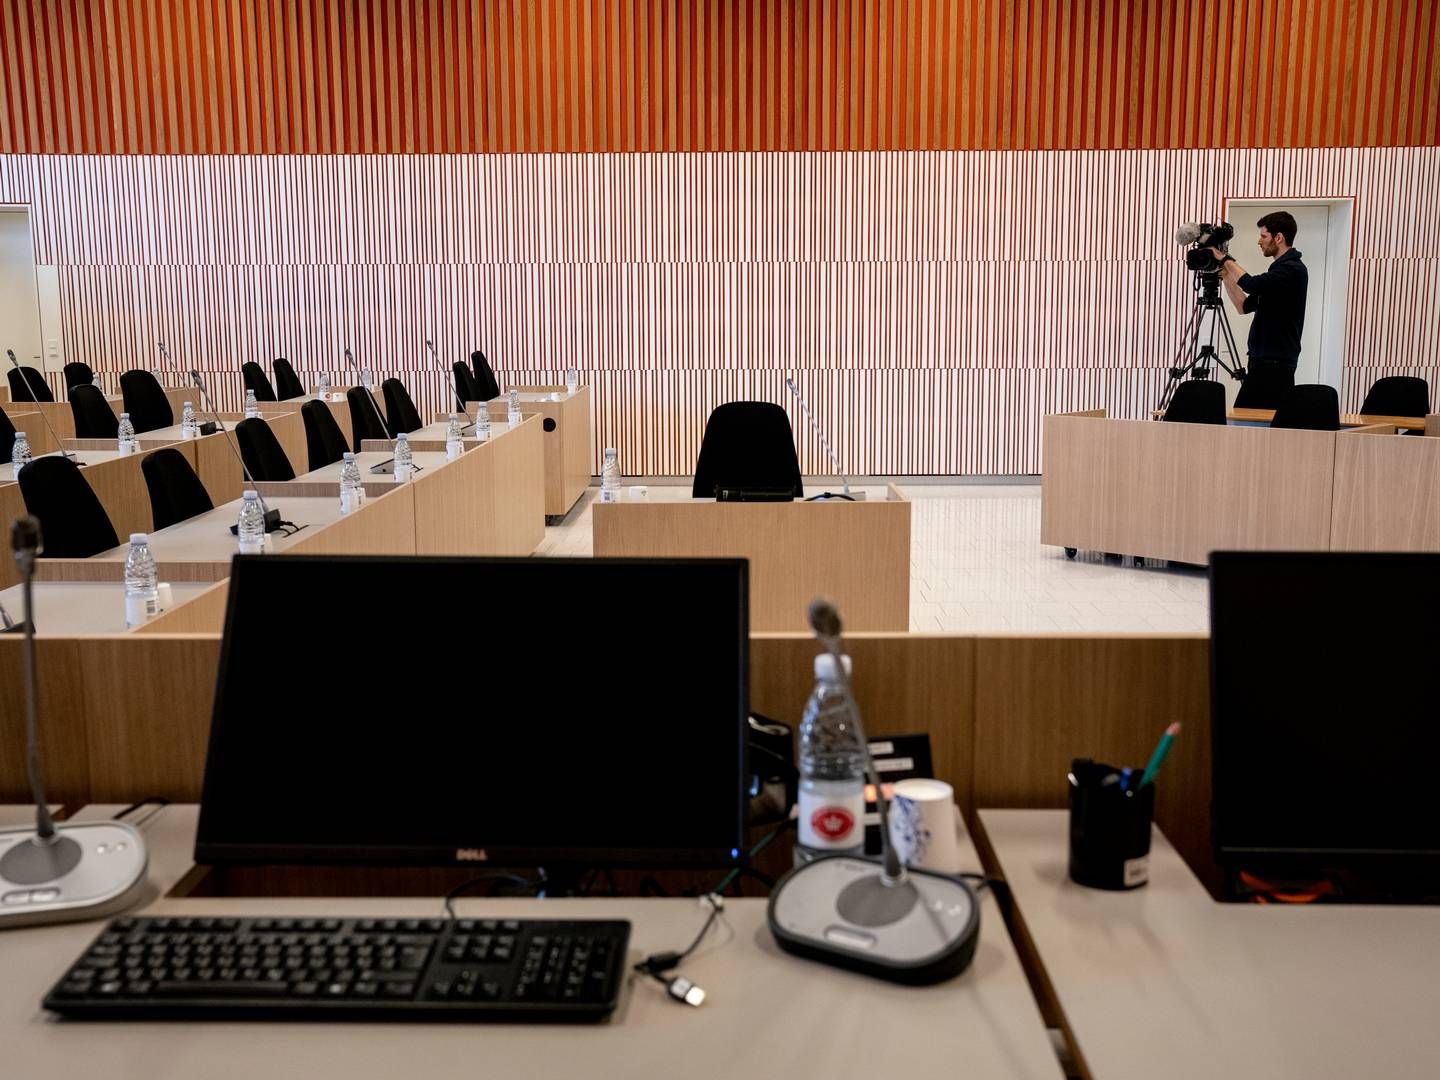 Advokater har indtil videre fået udbetalt over 57 mio. kr. for at være bisiddere i undersøgelseskommissionen om Skat, der har holdt over 130 afhøringsdage her i Retten på Frederiksberg. | Foto: Mads Nissen